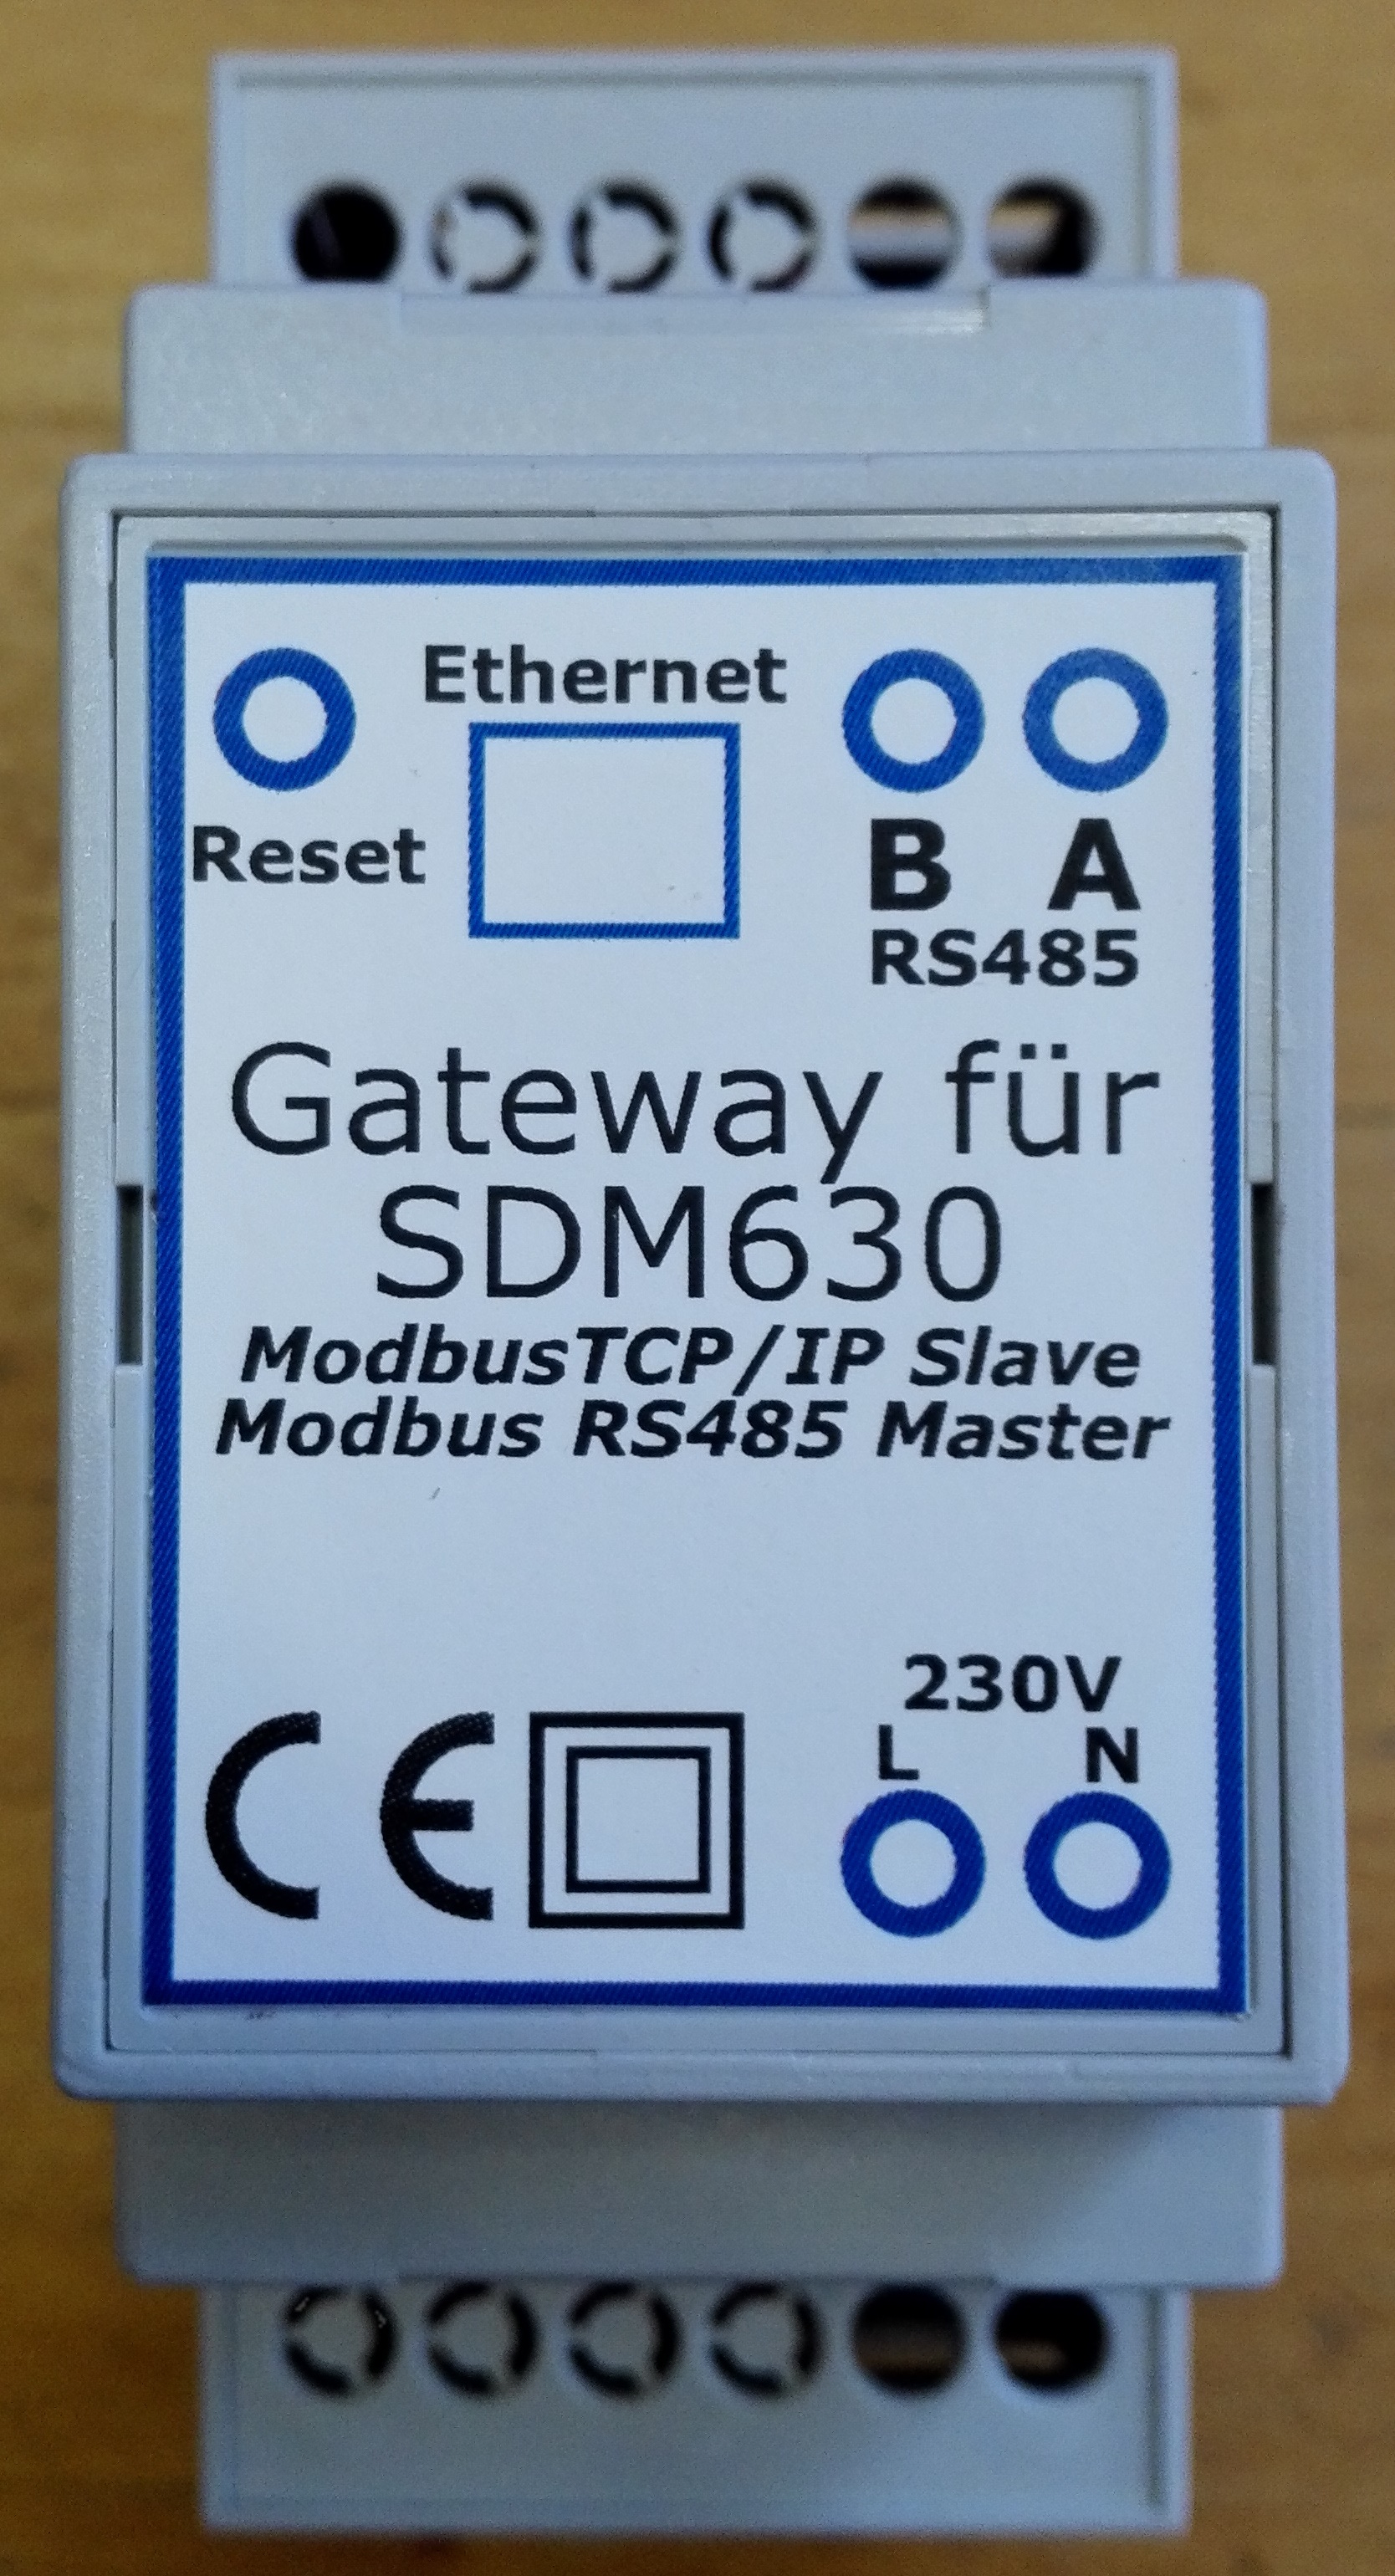 Gateway Modbus TCP/IP für SDM630 Zähler